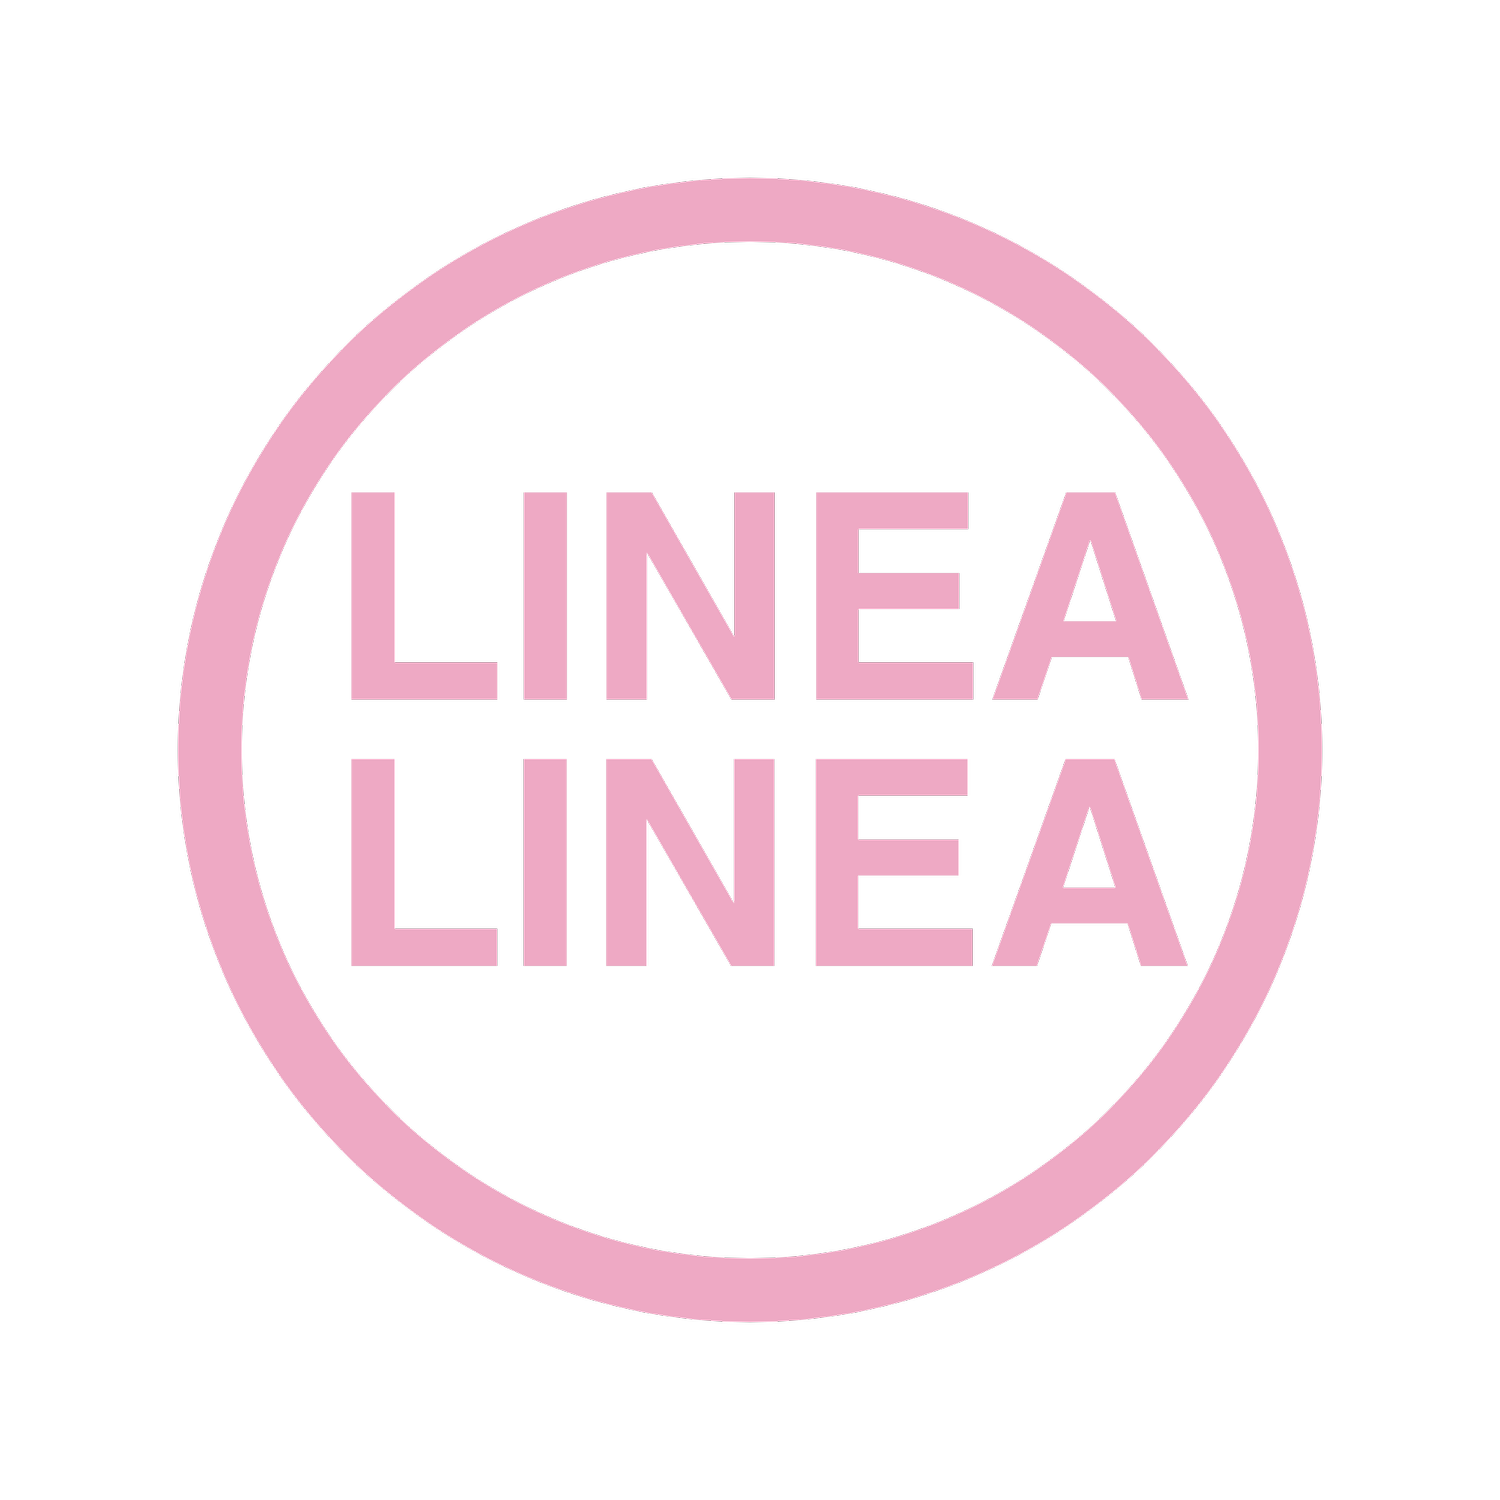 Linea Linea